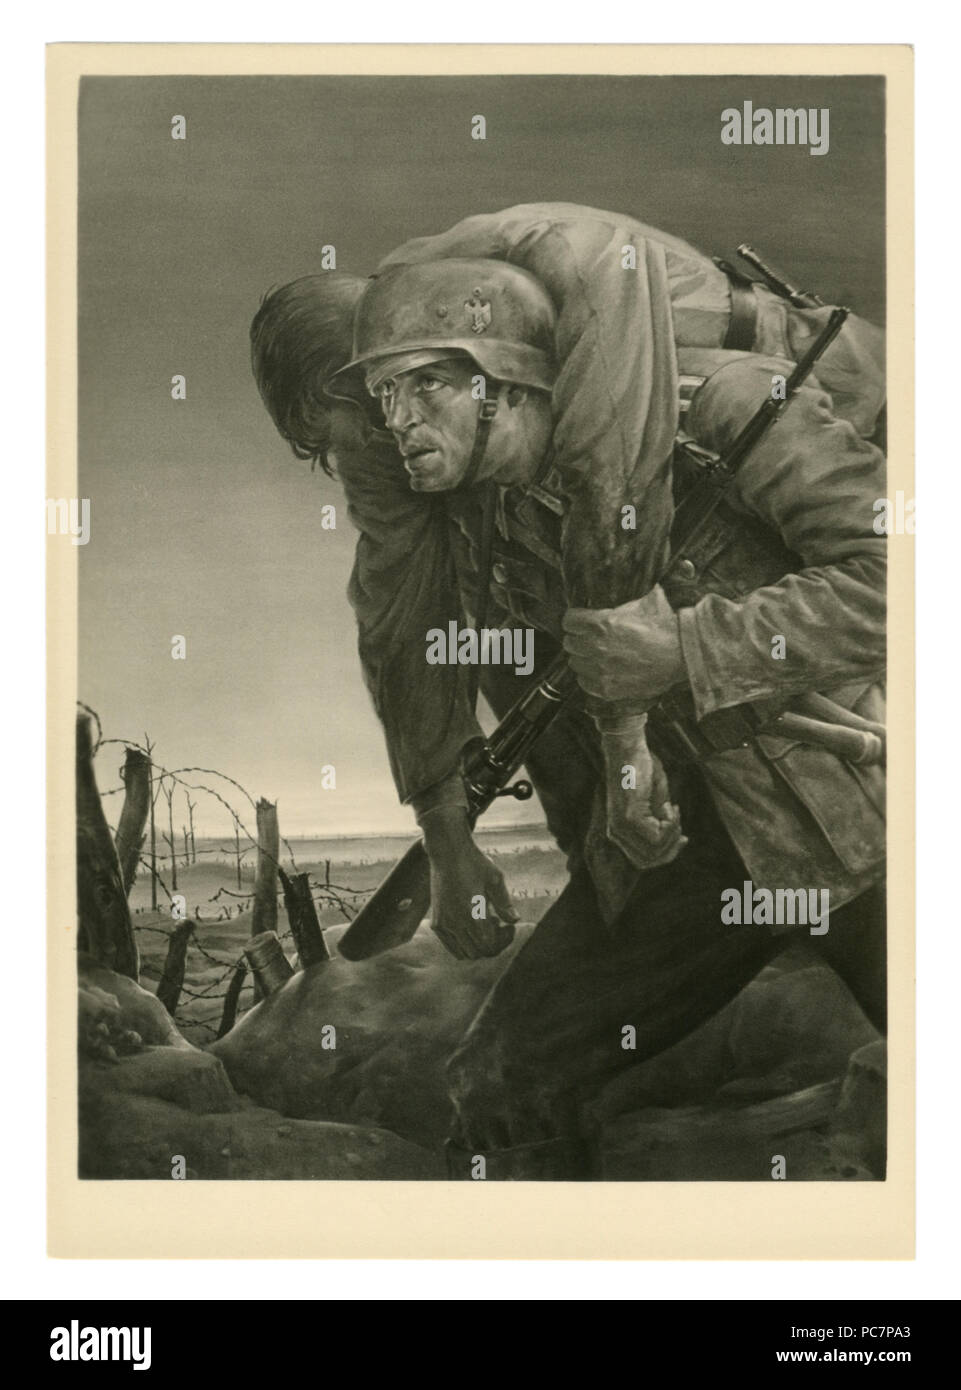 Carte postale historique : 'Kameraden'. Soldat allemand sur le front porte un camarade blessé. Artiste Vous Tschech, 1943, l'Allemagne, Troisième Reich Banque D'Images